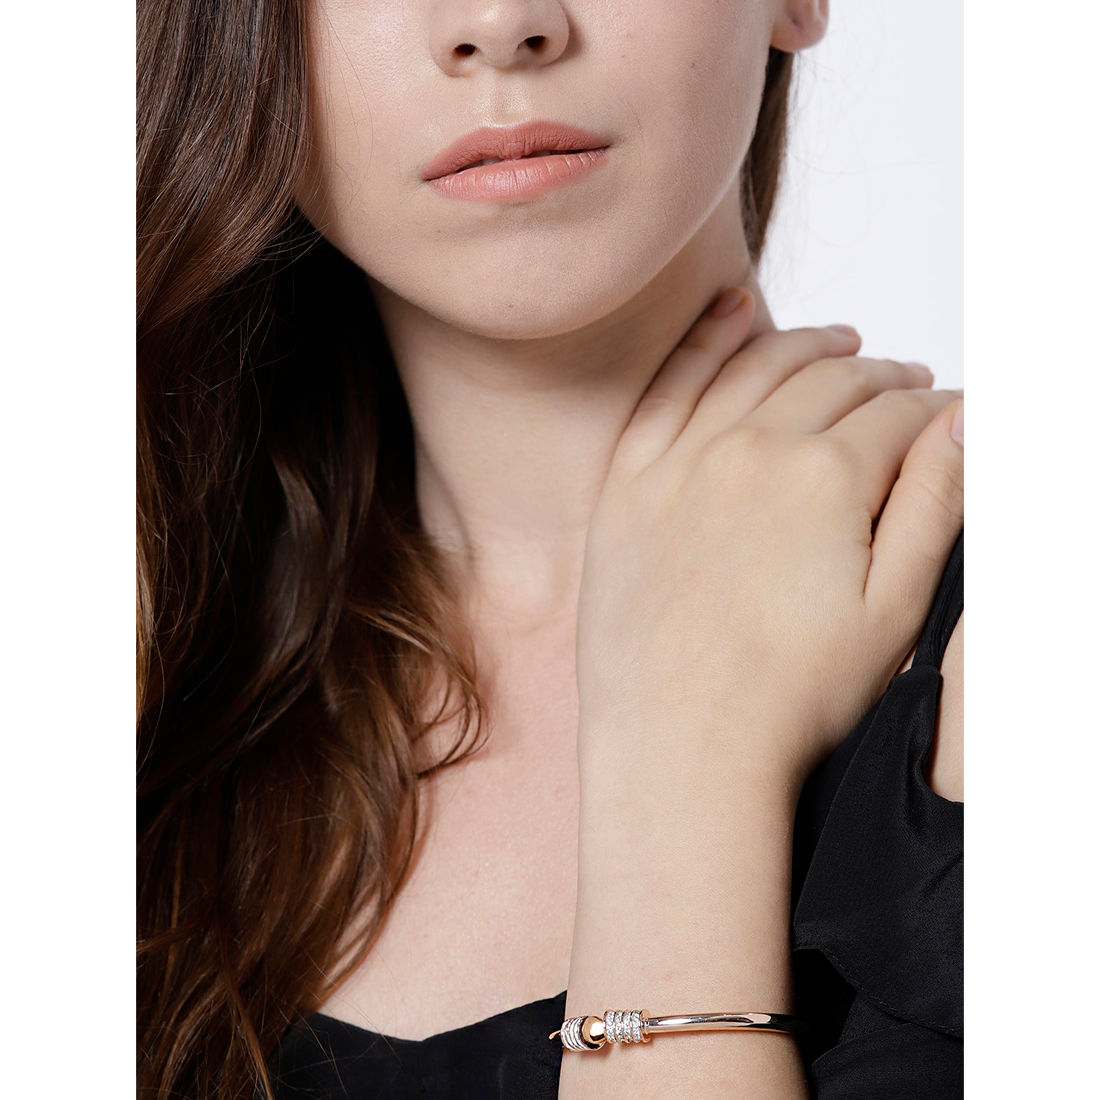 Buy Jewels Galaxy Women 4 Gold Toned Gold Plated Link Bracelet - Bracelet  for Women 21431402 | Myntra